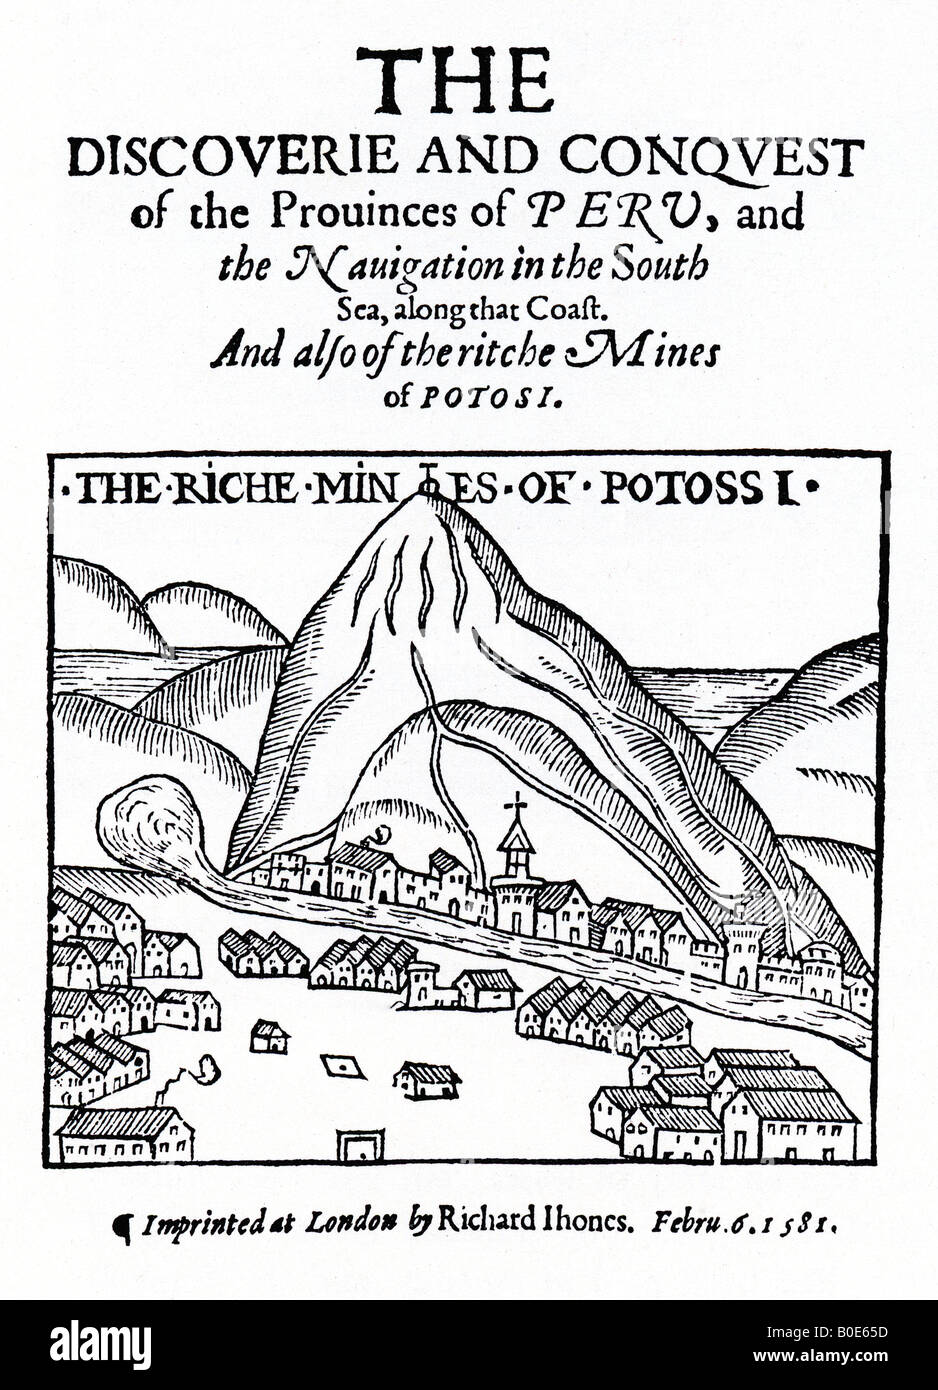 La découverte et la CONQUÊTE DES PROVINCES DU PÉROU publié en février 1581 avec une photo de la ville de Potossi riche d'argent Banque D'Images